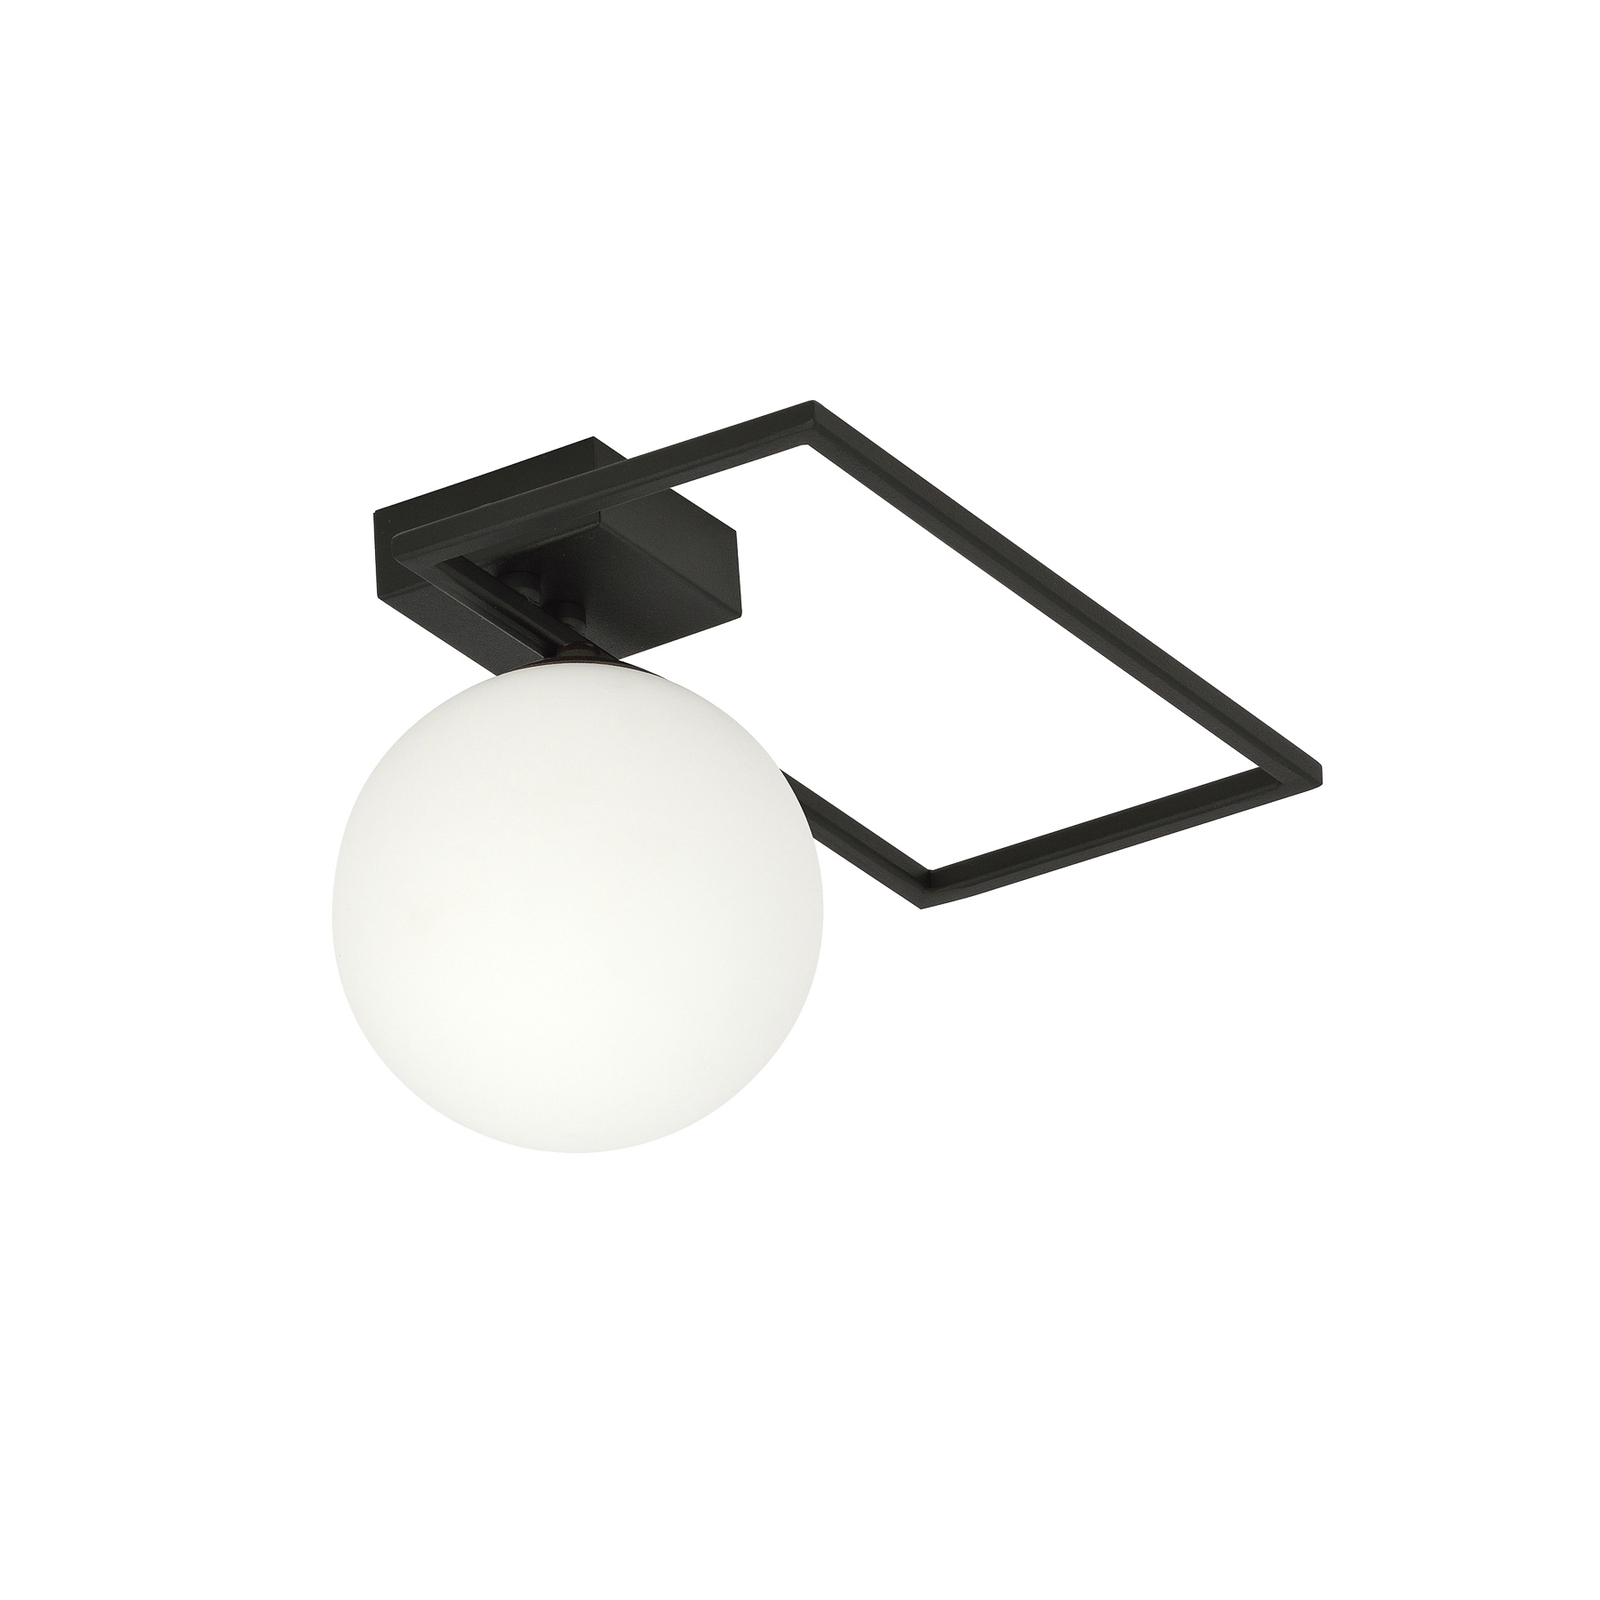 Imago 1D ceiling light, one-bulb, black/opal